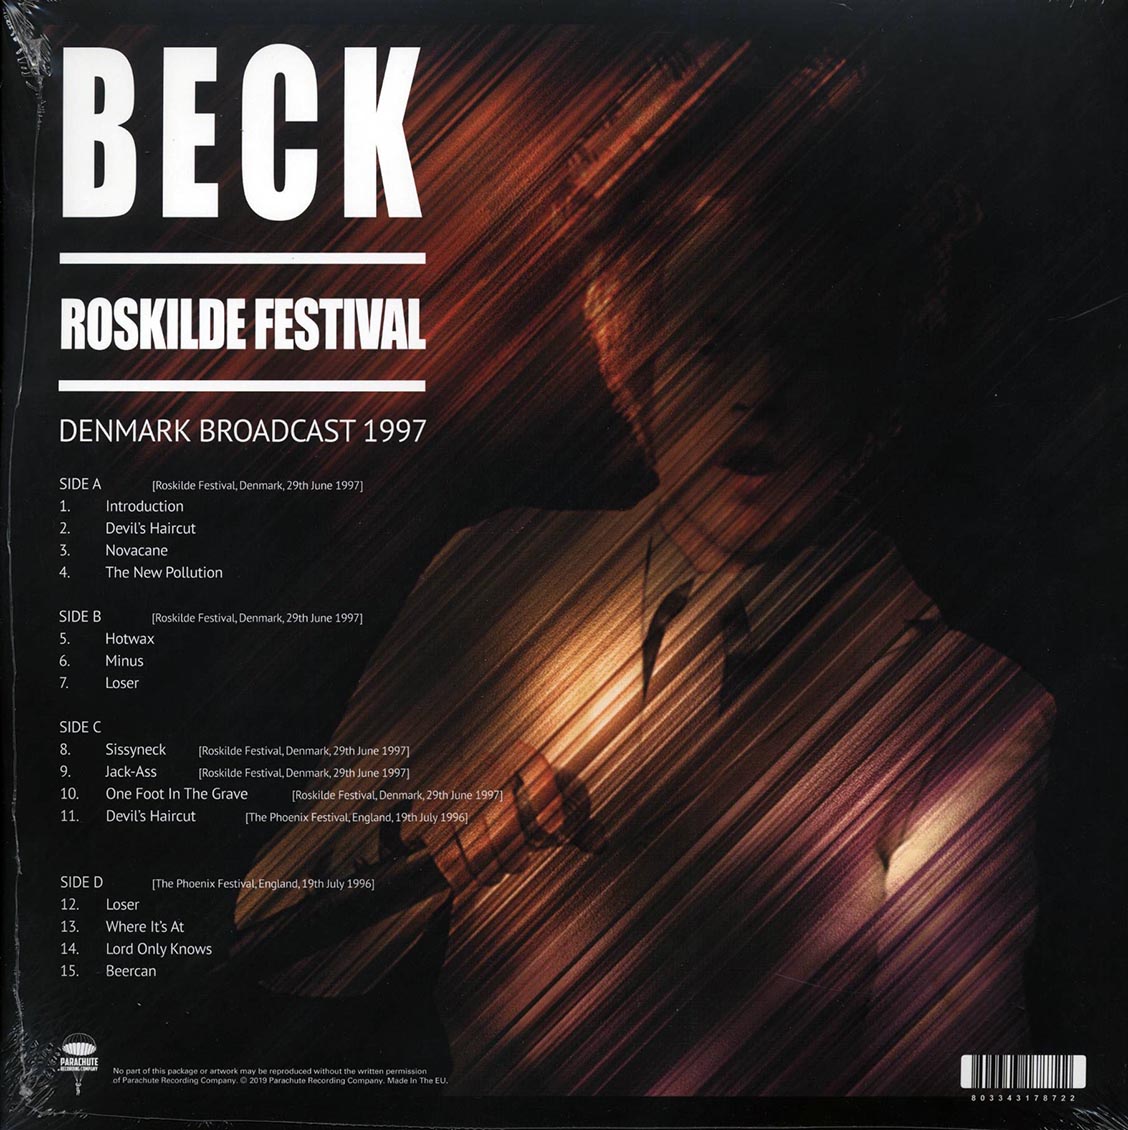 Beck - Roskilde Festival: Denmark Broadcast 1997 (2xLP) - Vinyl LP, LP